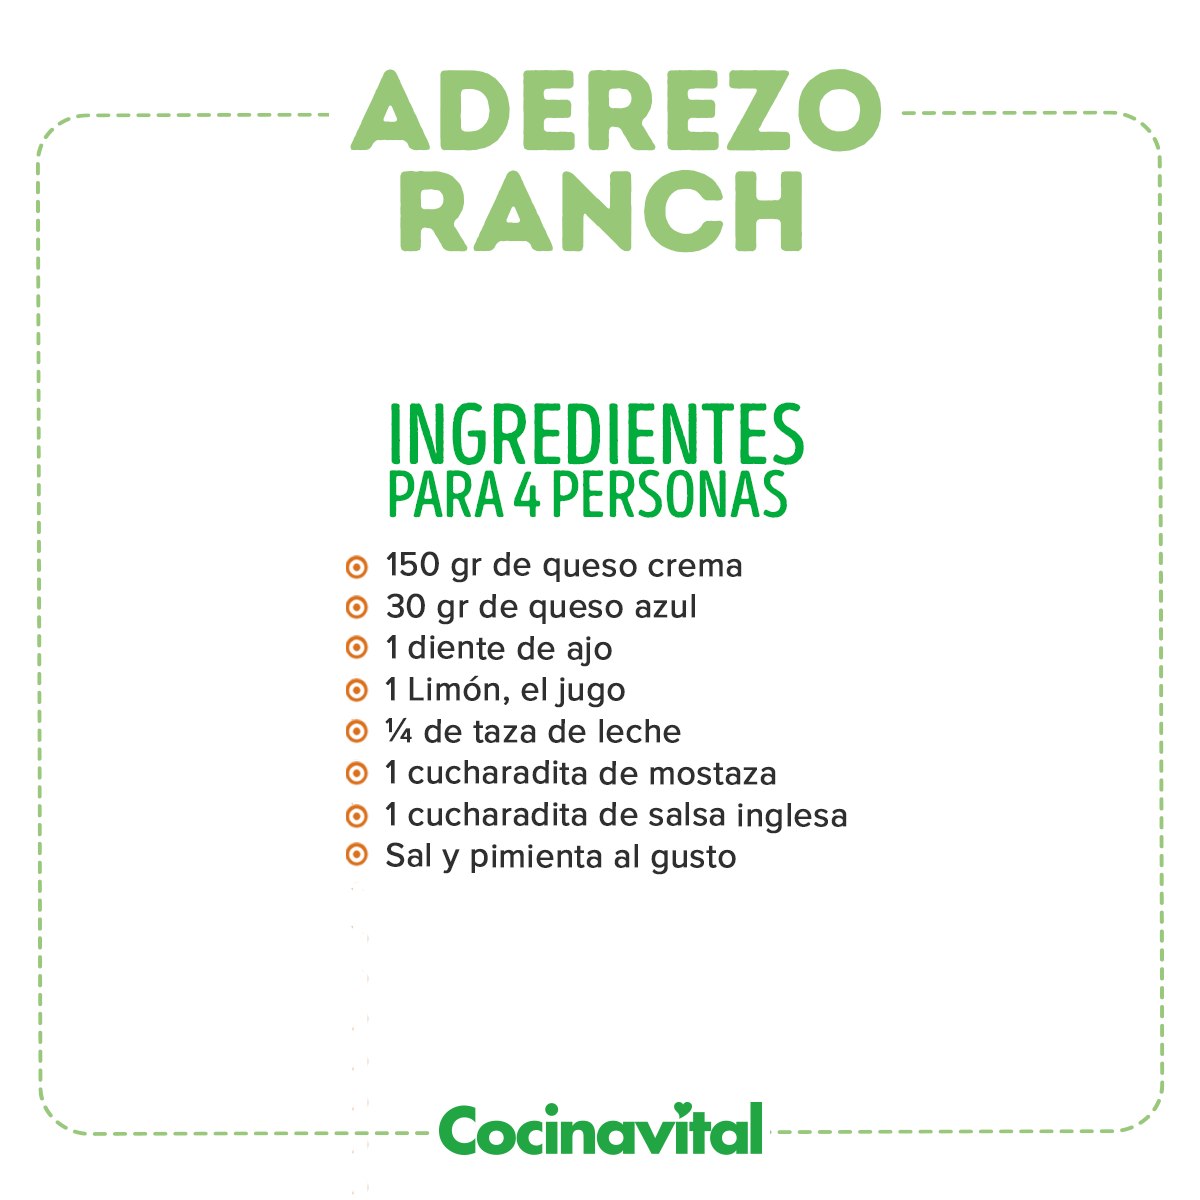 Ingredientes para el aderezo ranch 